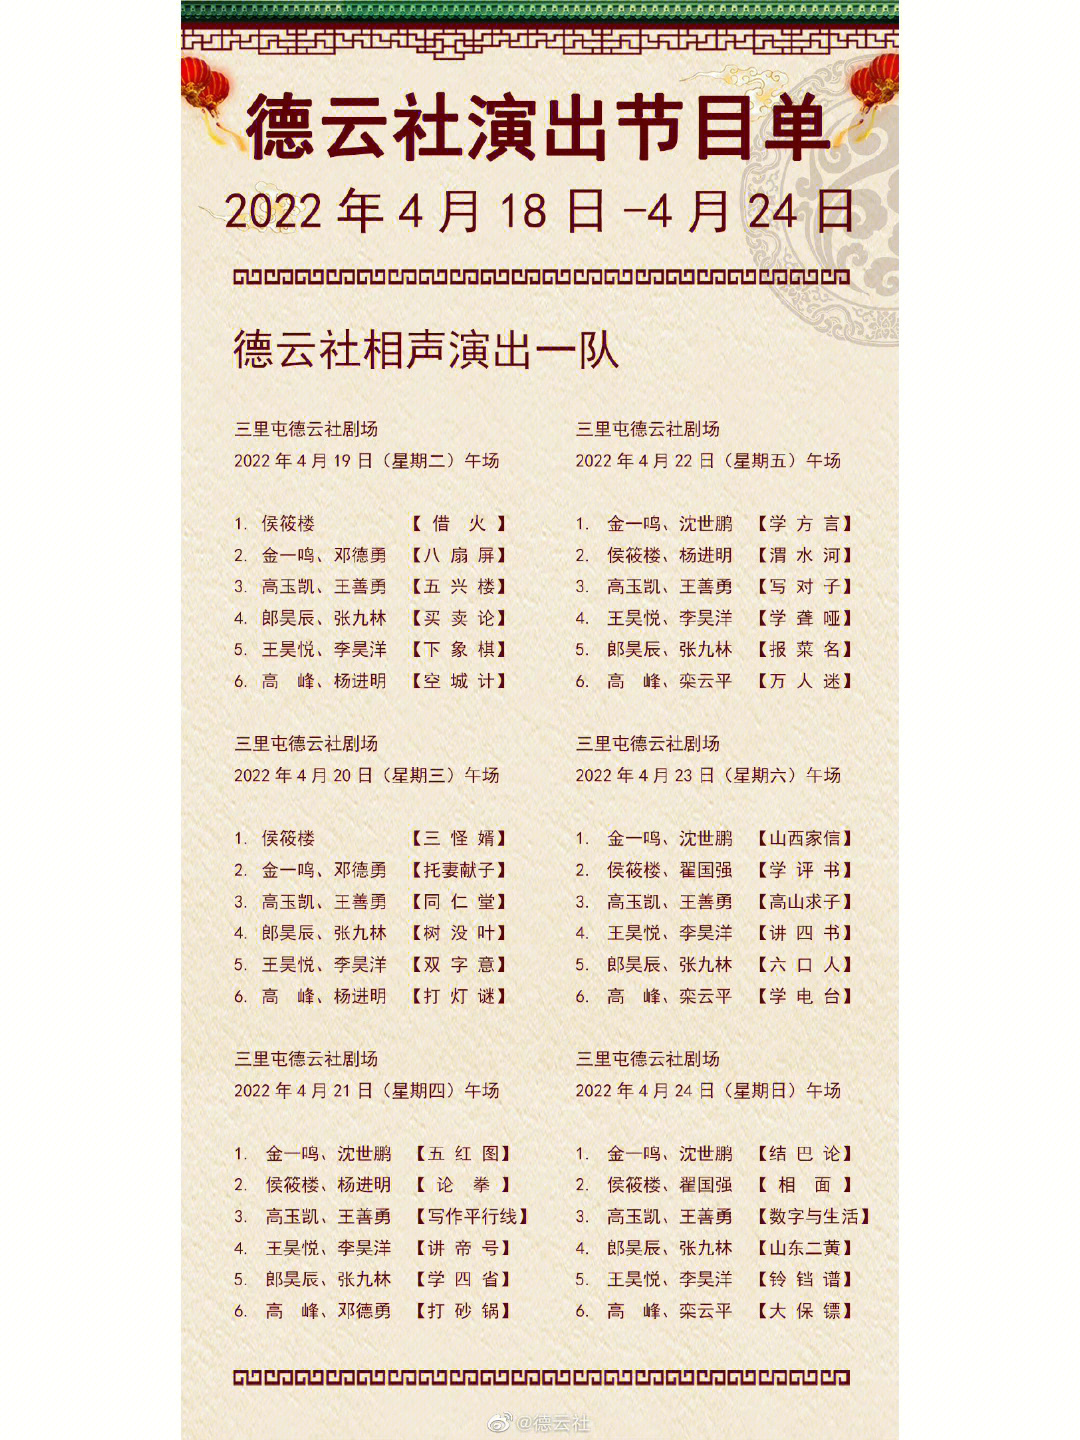 德云社节目单2020图片